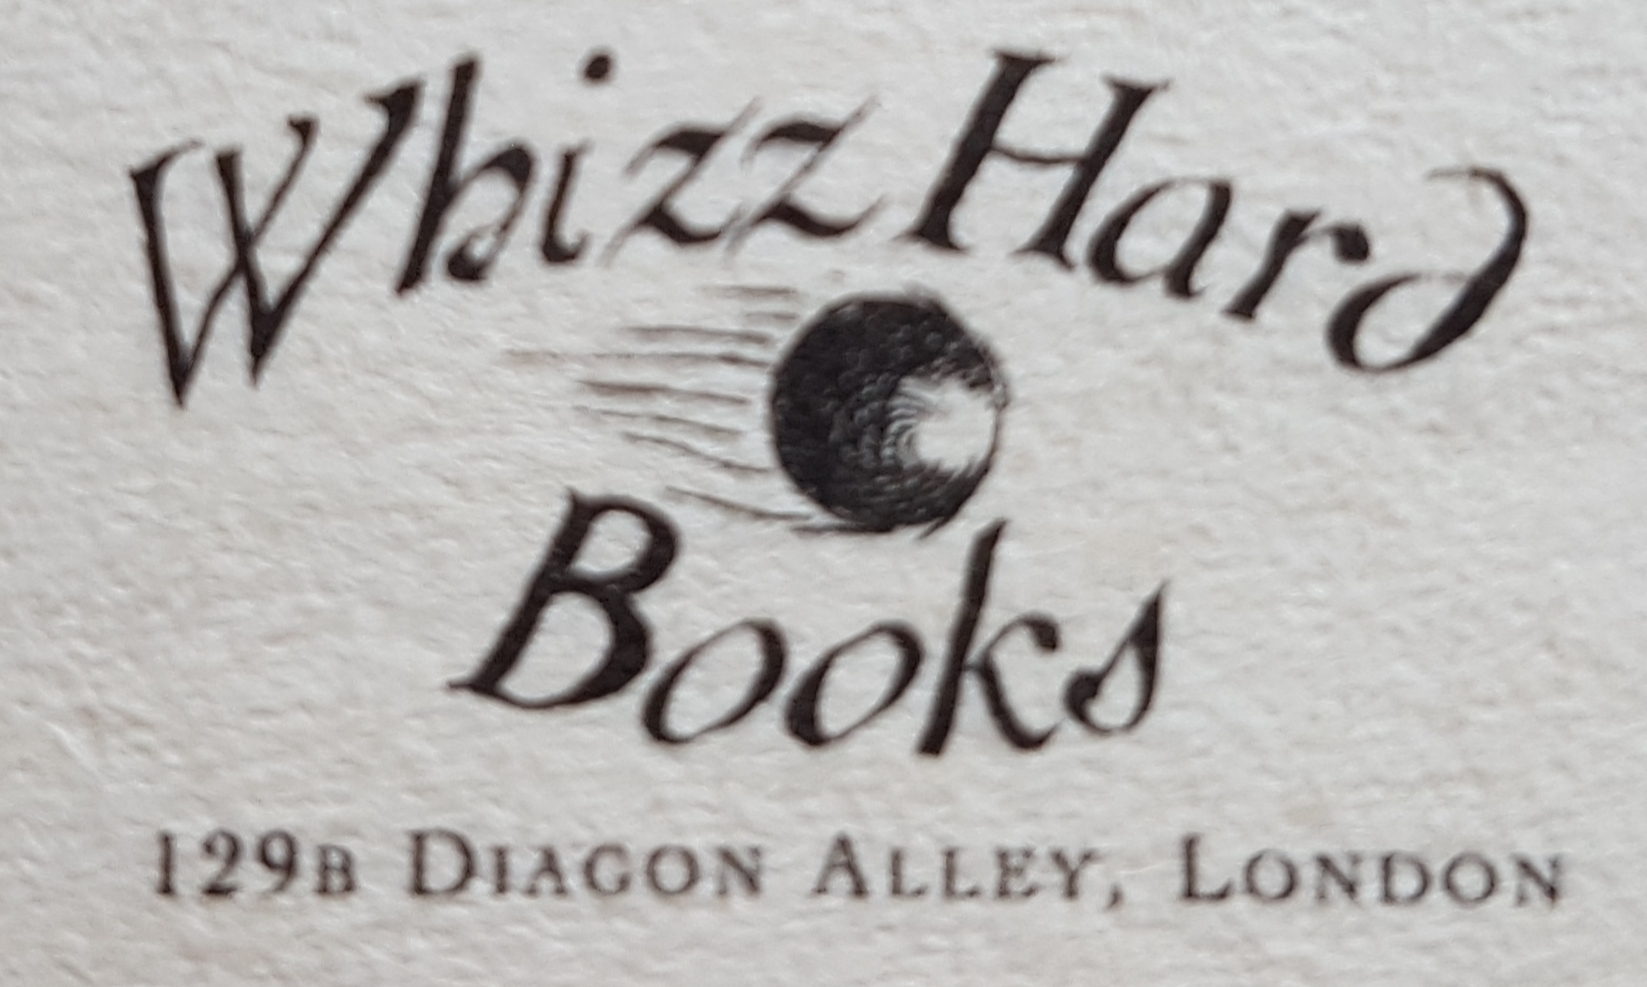 Whizz Hard Books (Comic Relief 2001)